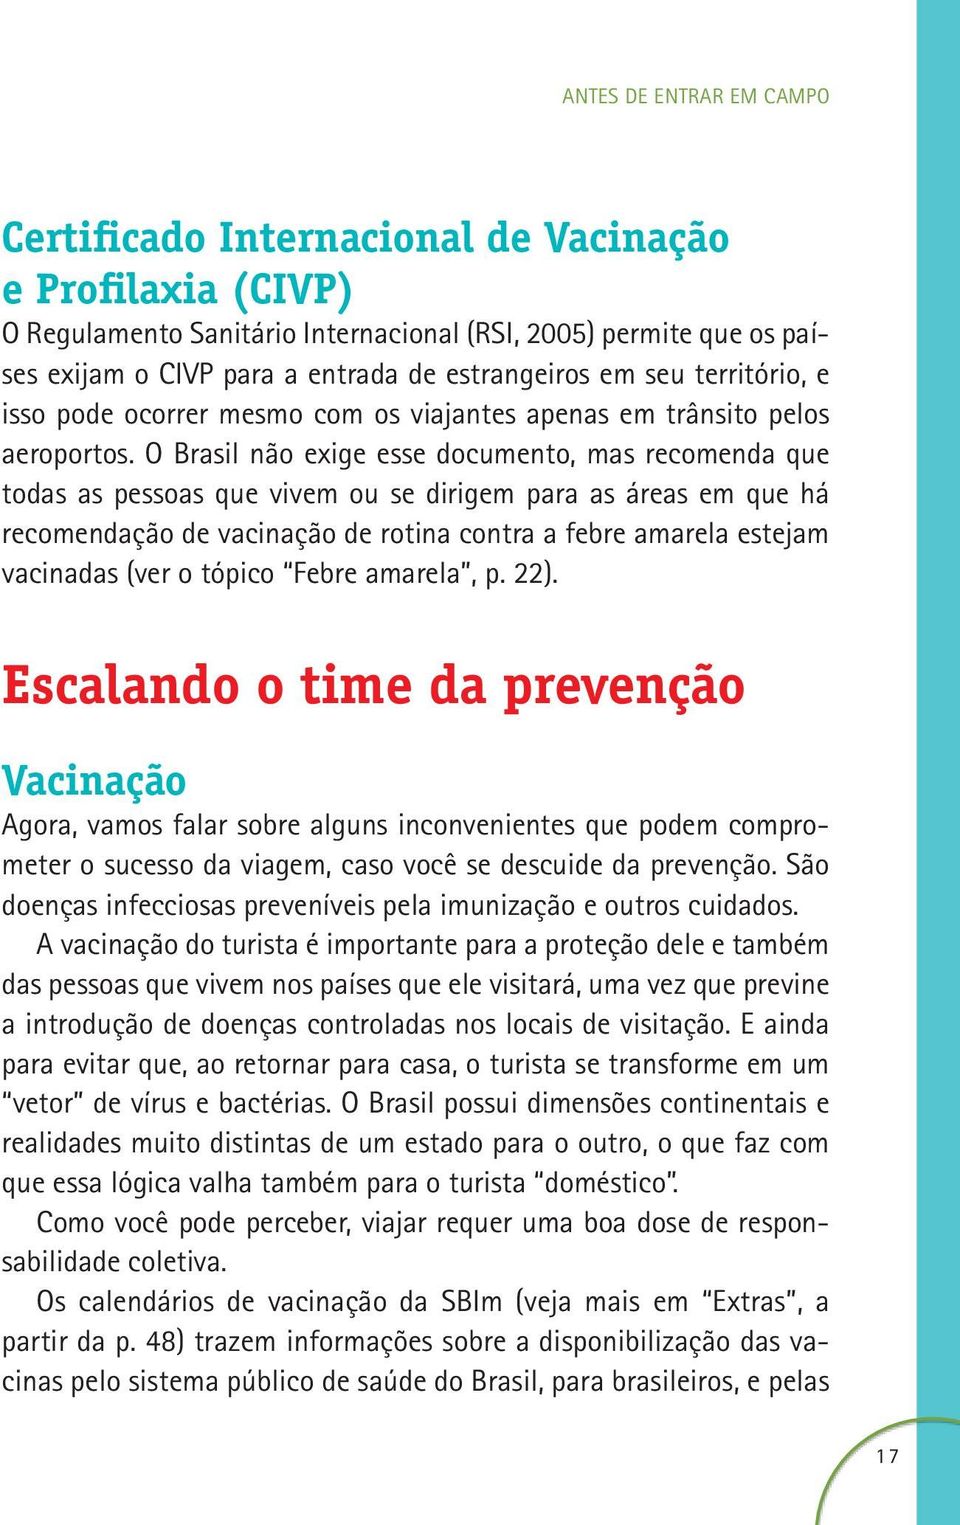 O Brasil não exige esse documento, mas recomenda que todas as pessoas que vivem ou se dirigem para as áreas em que há recomendação de vacinação de rotina contra a febre amarela estejam vacinadas (ver